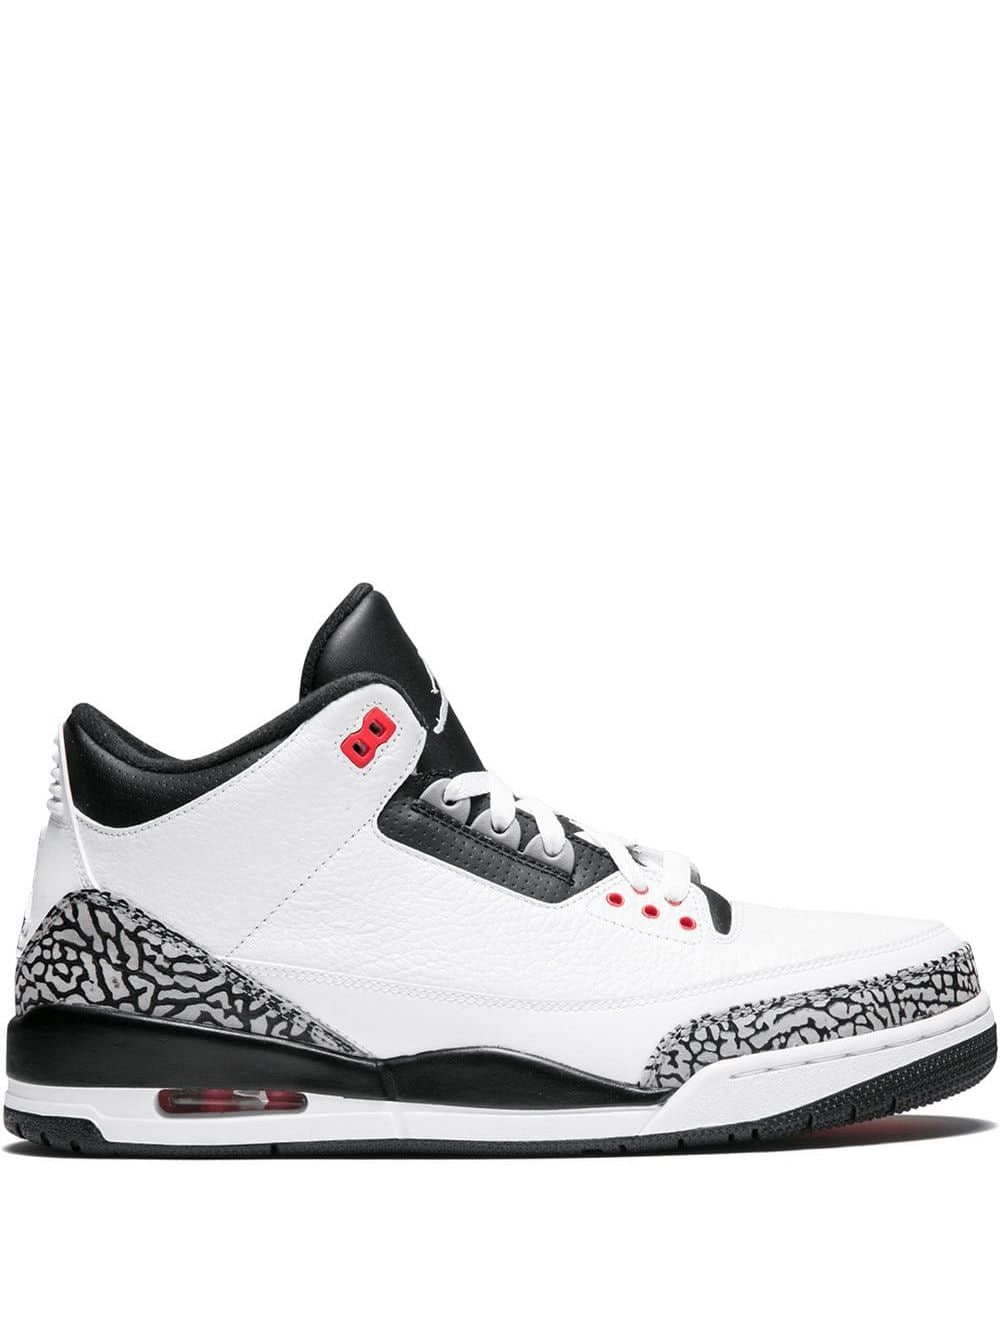 Jordan Air Jordan 3 Retro "Infrared 23" sneakers - White